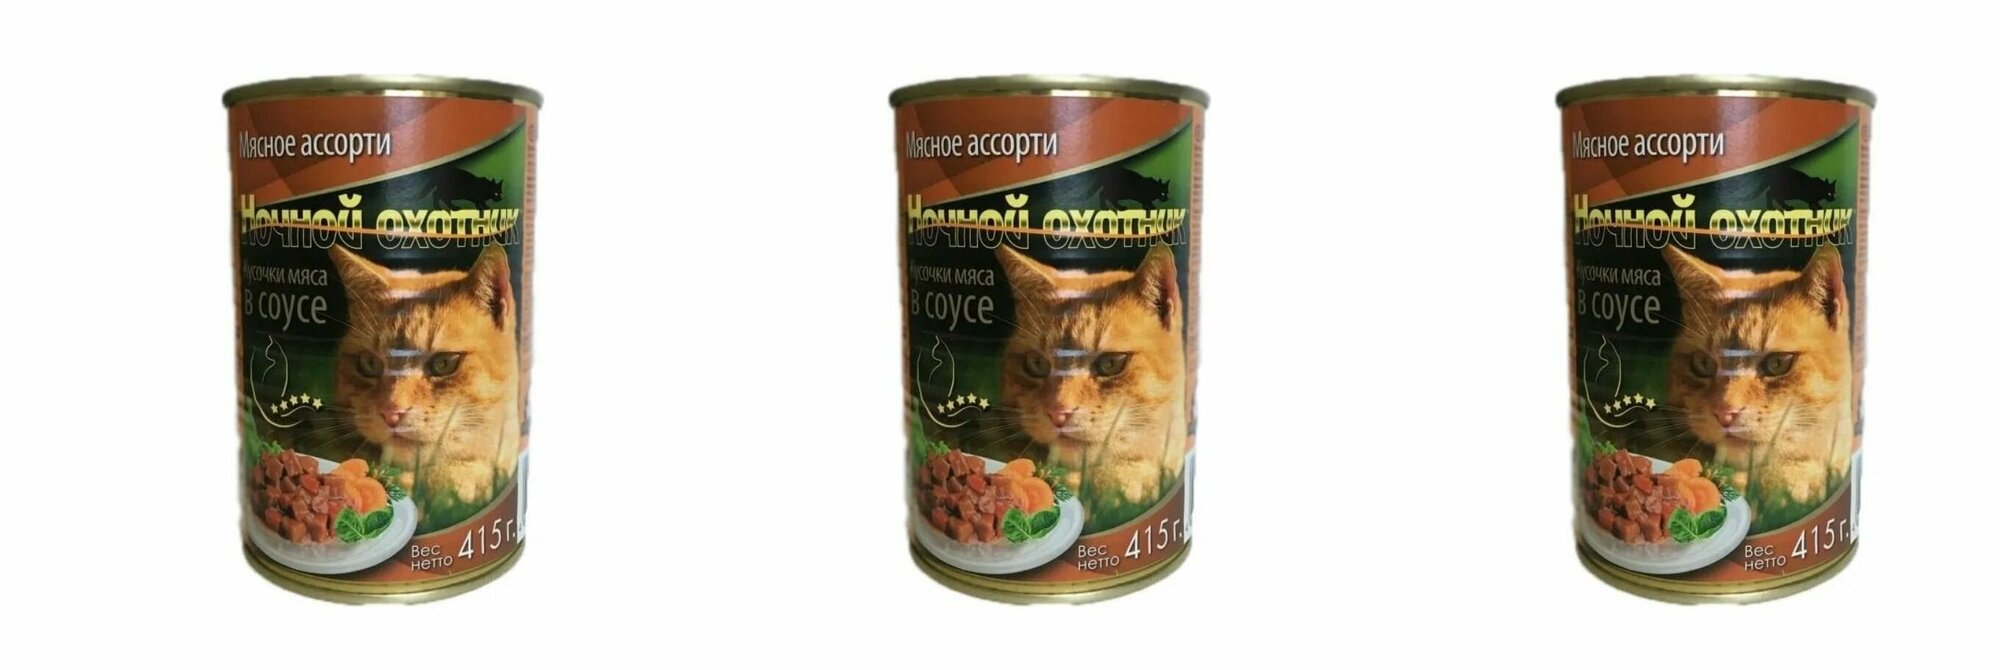 Ночной охотник Консервы для кошек мясное ассорти кусочки в соусе,415 г,3 шт